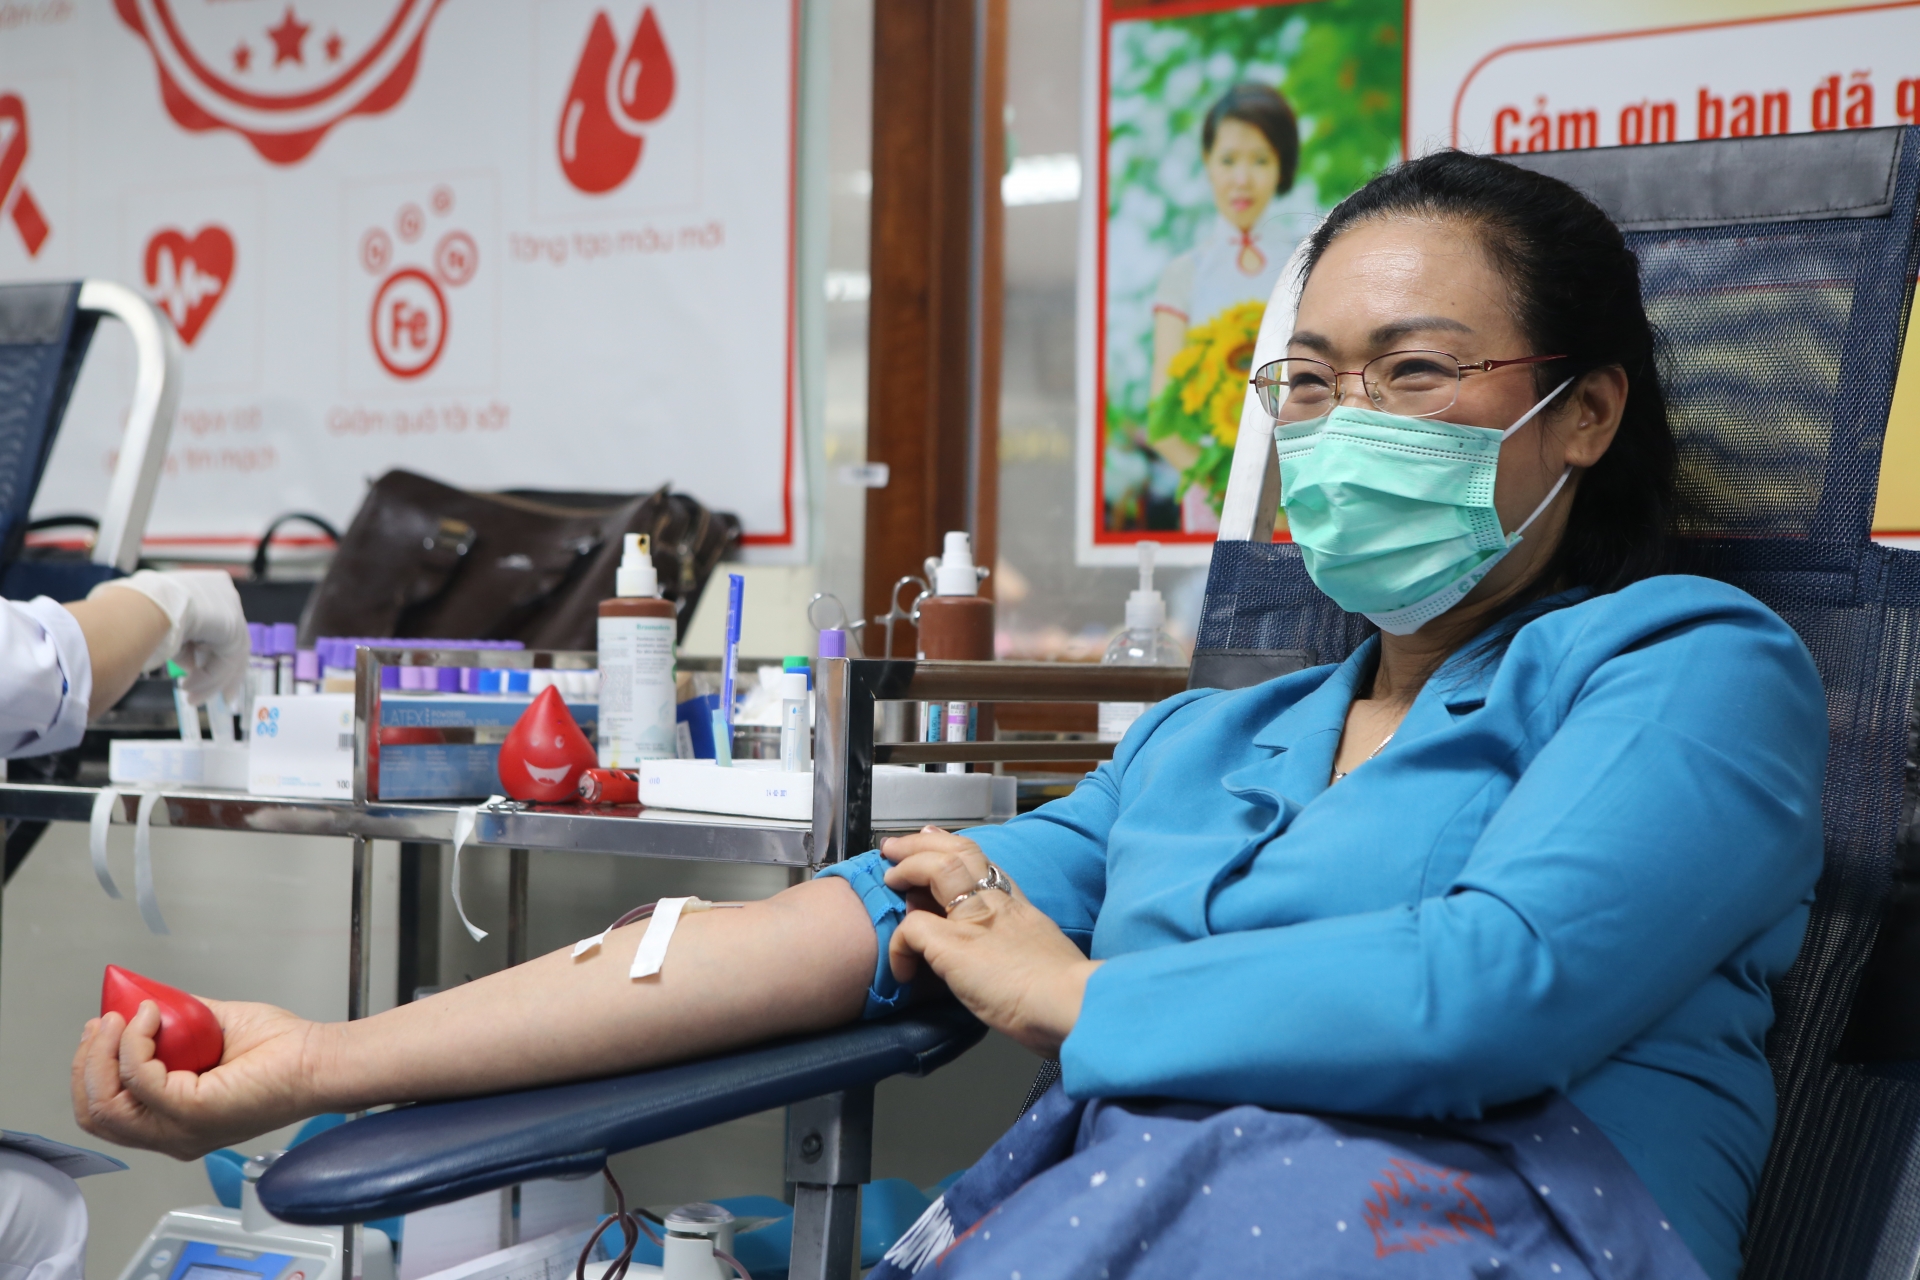 Đoàn viên ngành Y tế vừa phục vụ, vừa dành giọt máu đào cho người bệnh